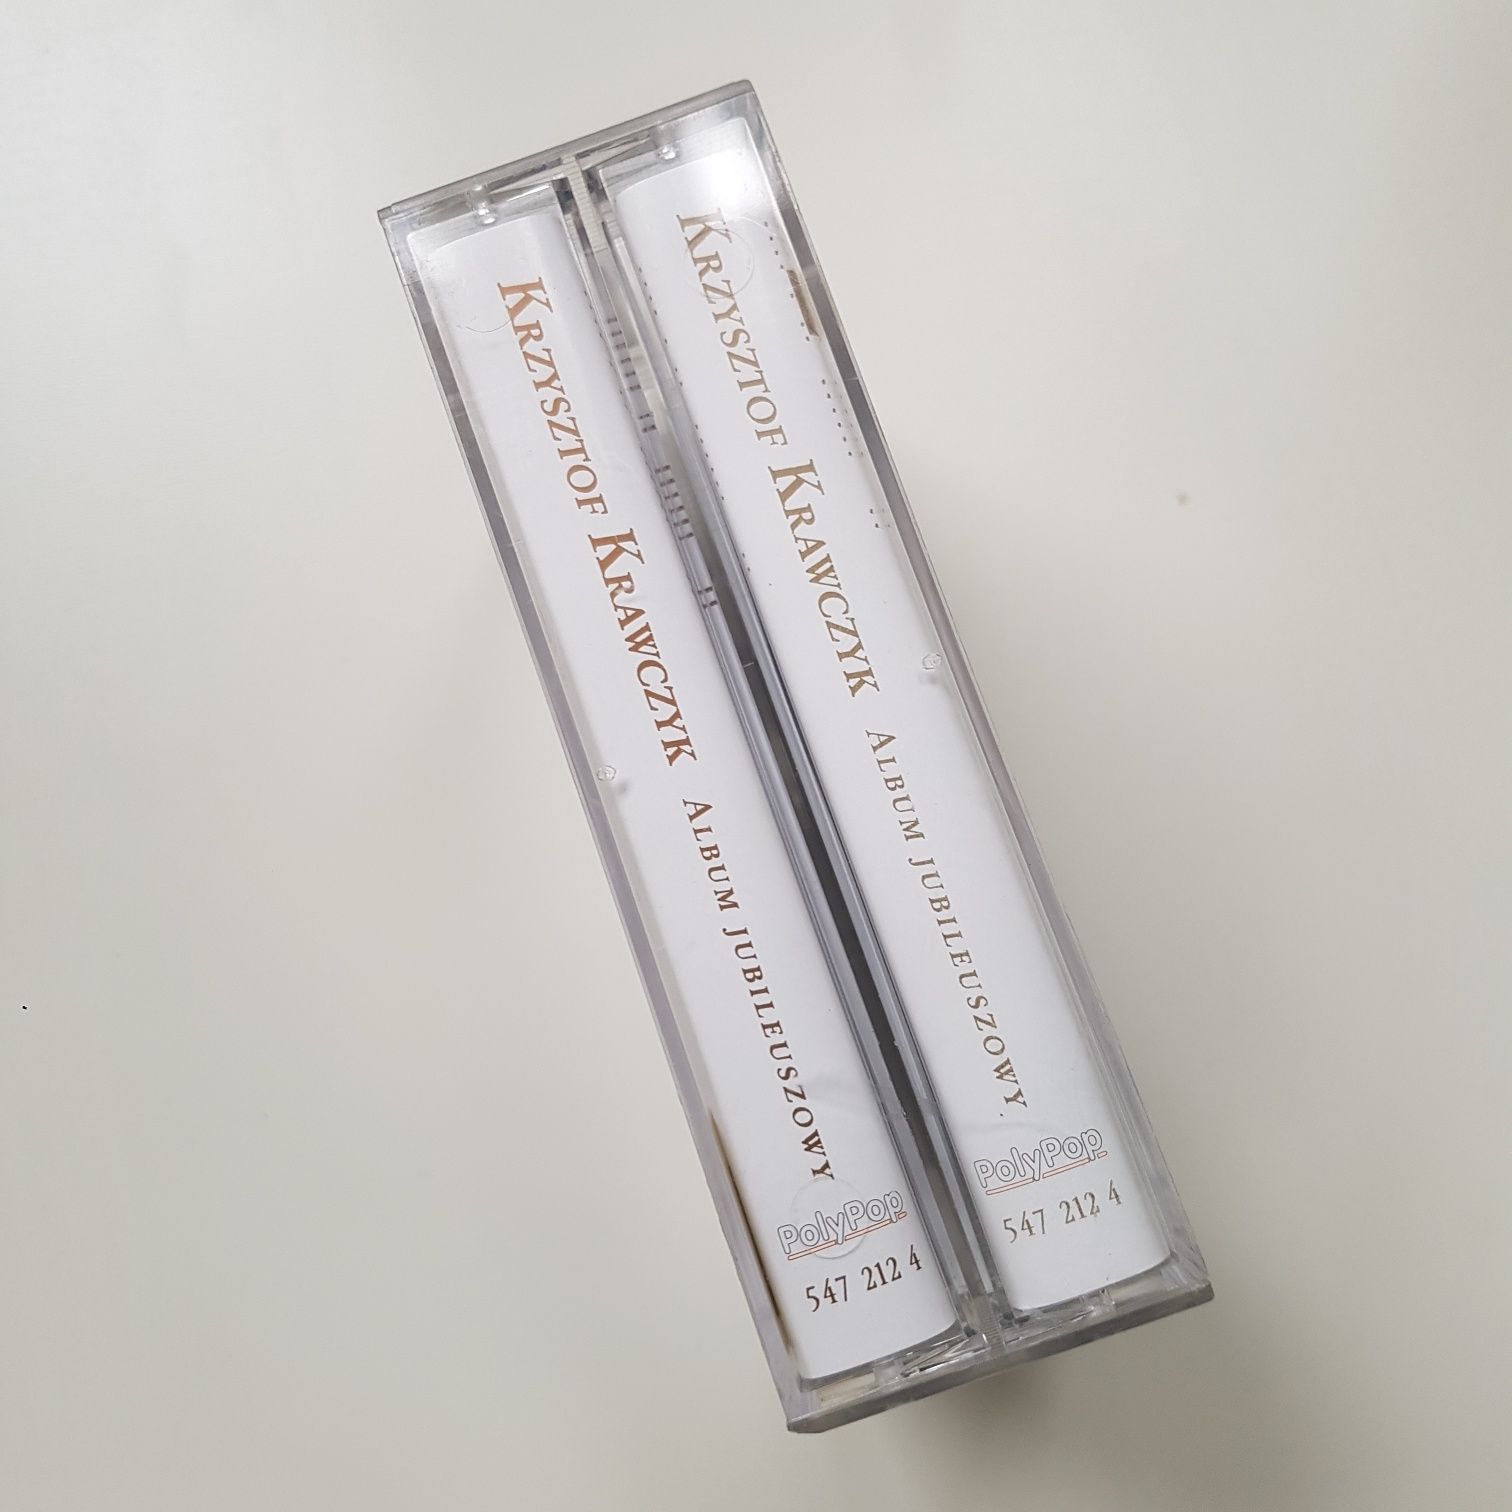 Krzysztof Krawczyk - Album Jubileuszowy (2MC) kaseta